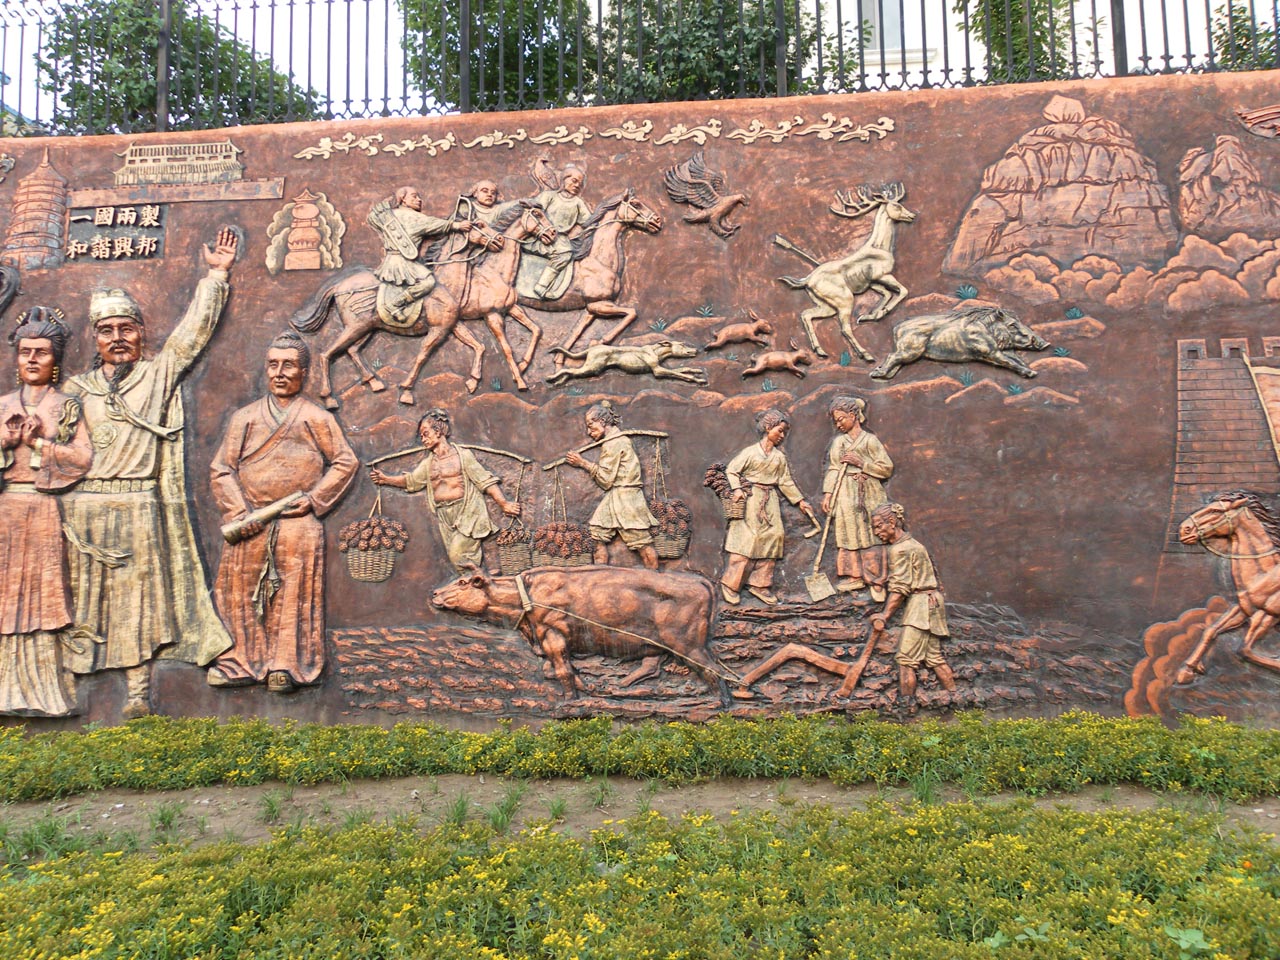 고대 북중국의 농촌 풍경. 그림은 요나라(916~1125년)가 지배할 당시의 북중국. 중국 내몽골자치구 파림좌기에서 찍은 거리 벽화. 
